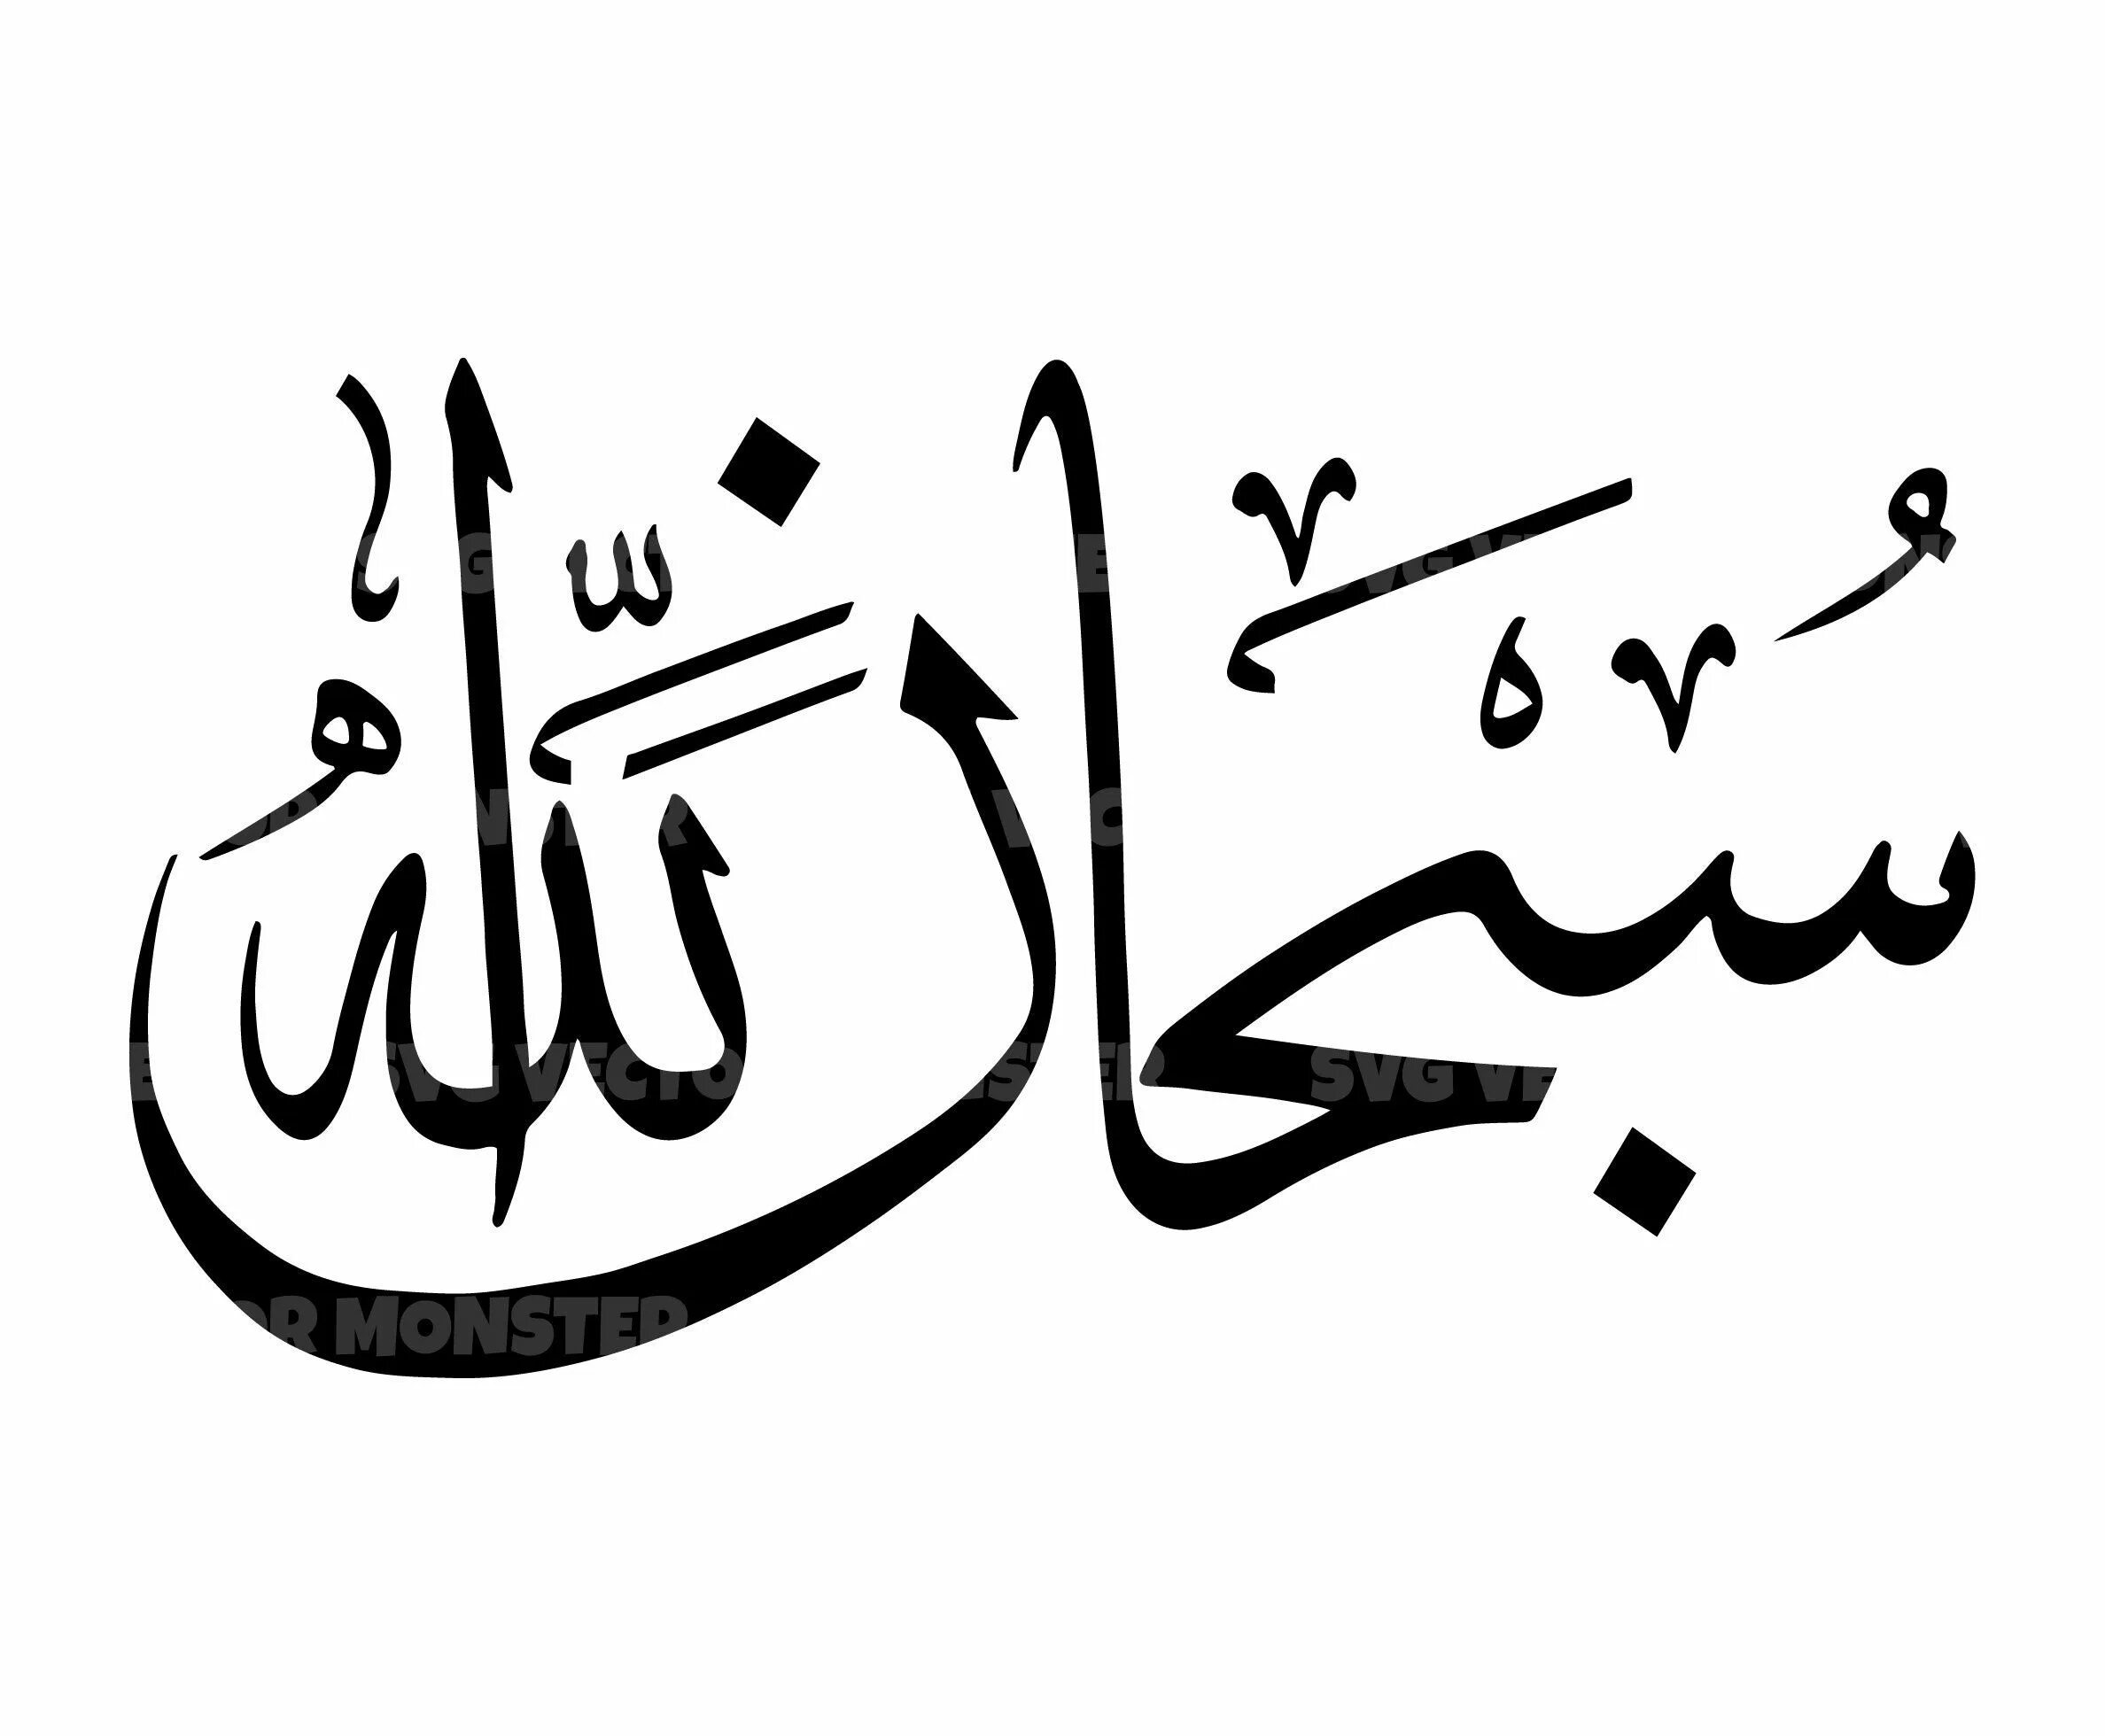 СУБХАНАЛЛАХ на арабском каллиграфия. Исламская каллиграфия МАШААЛЛАХ. Исламская каллиграфия Бисмилла. Арабские надписи.